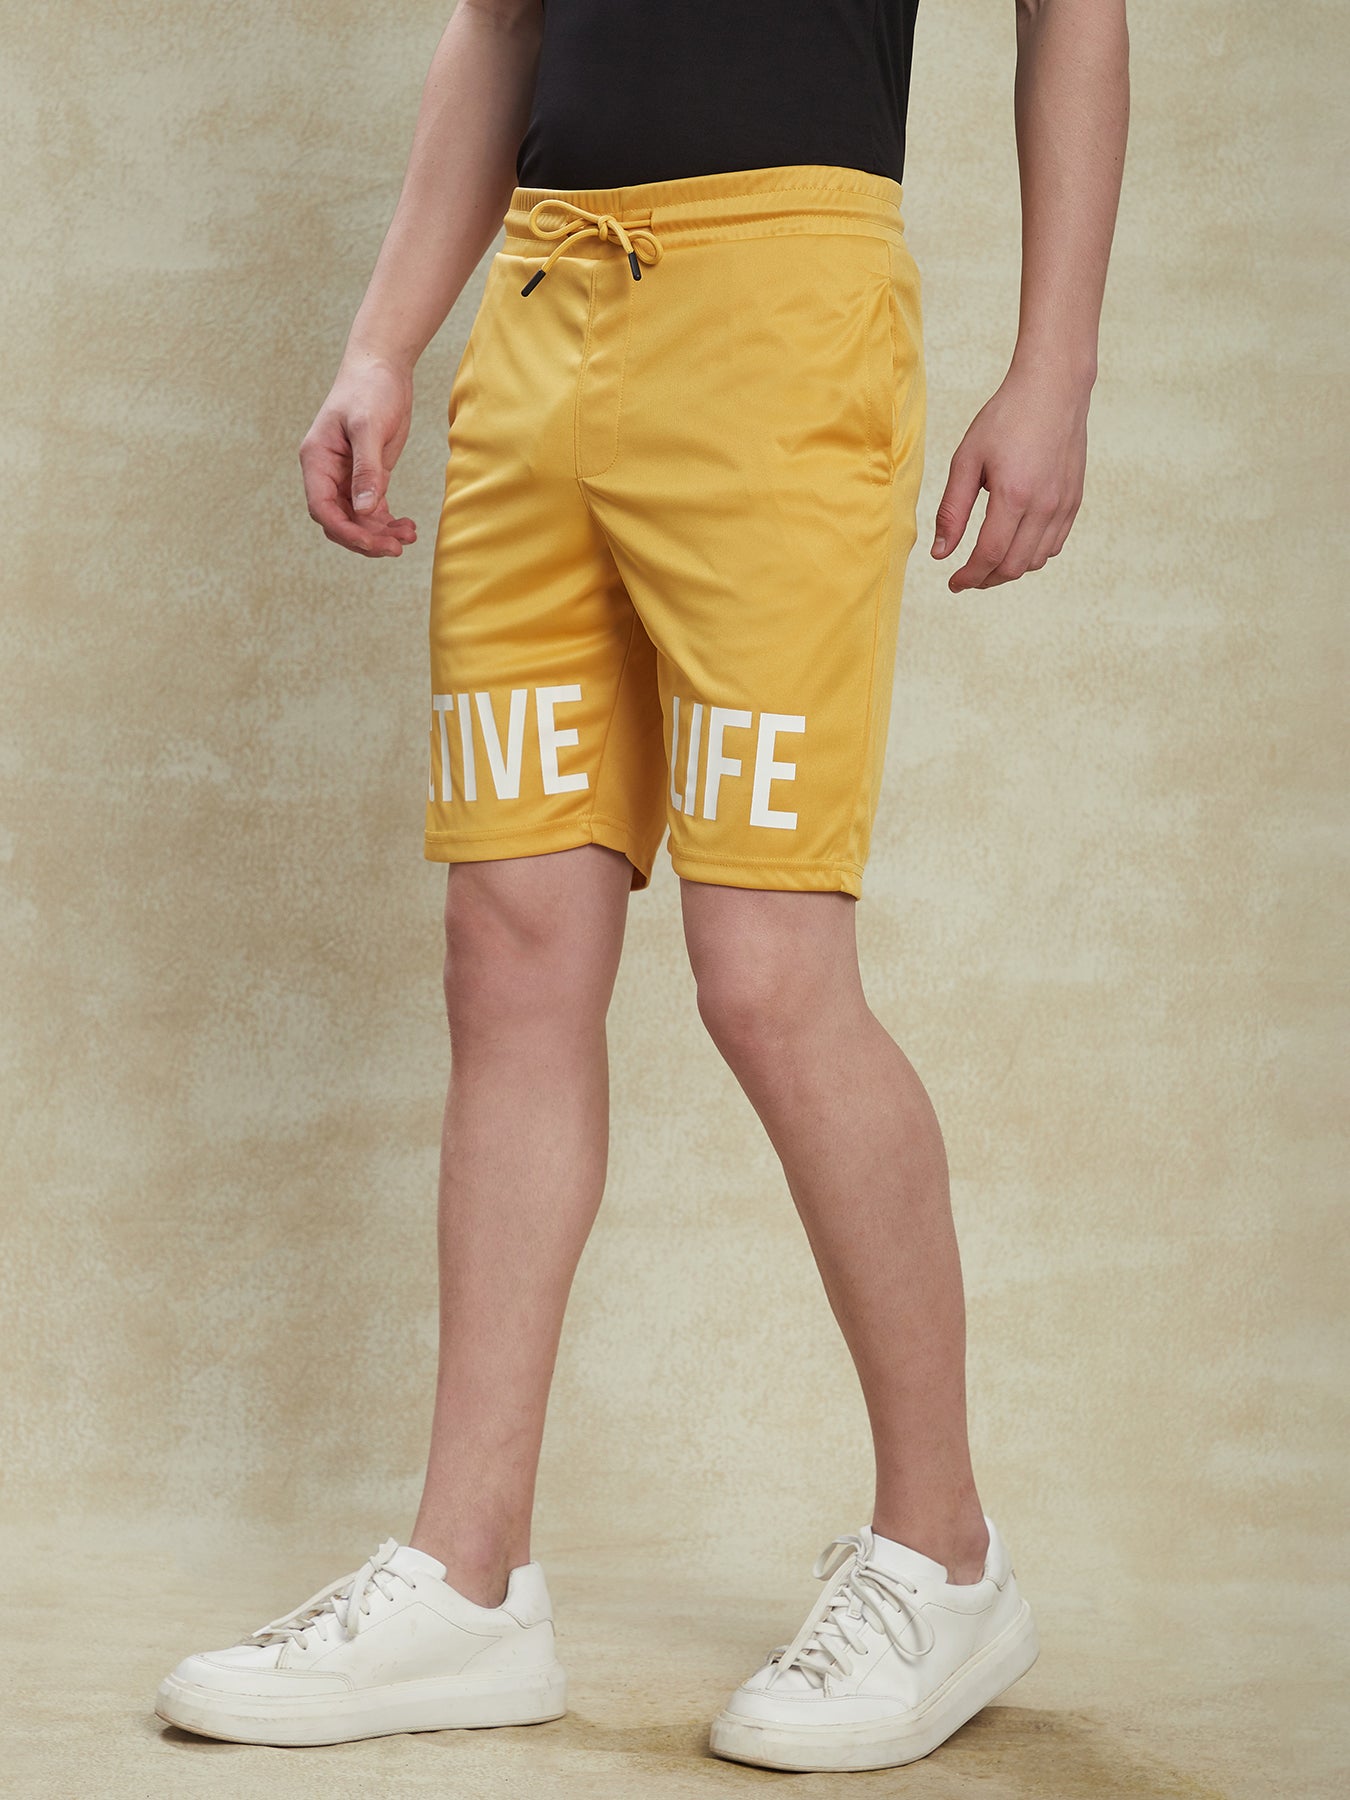 Knitted Mustard Yellow Printed Shorts Active Shorts